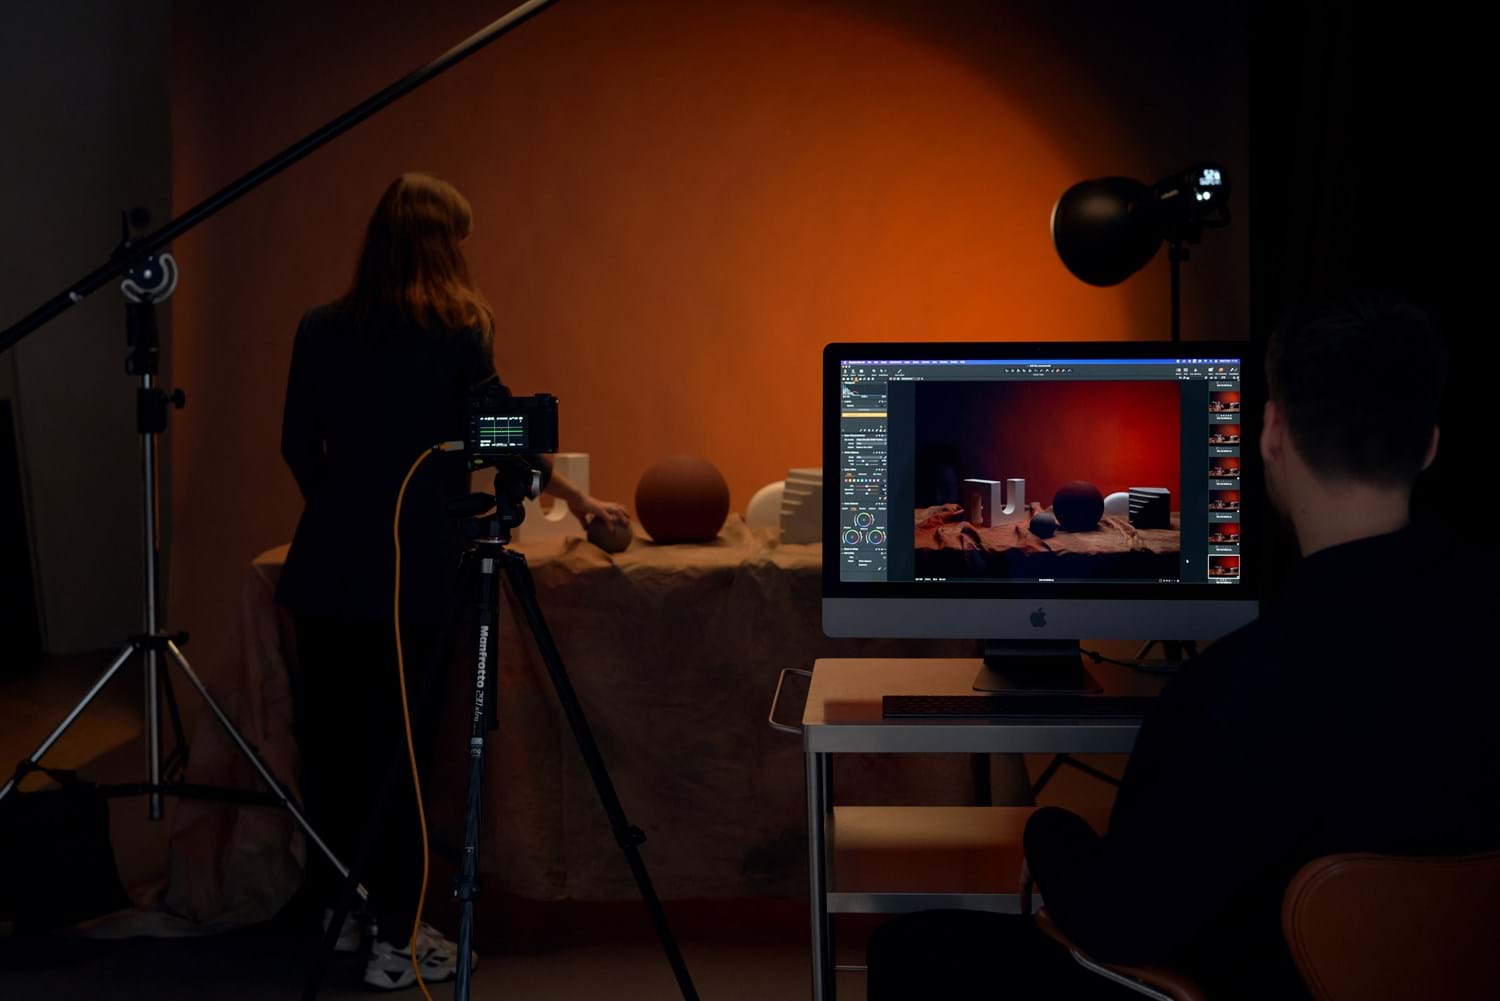 Sesión fotográfica escenificada con cámara cableada y captura conectada de imágenes al ordenador.